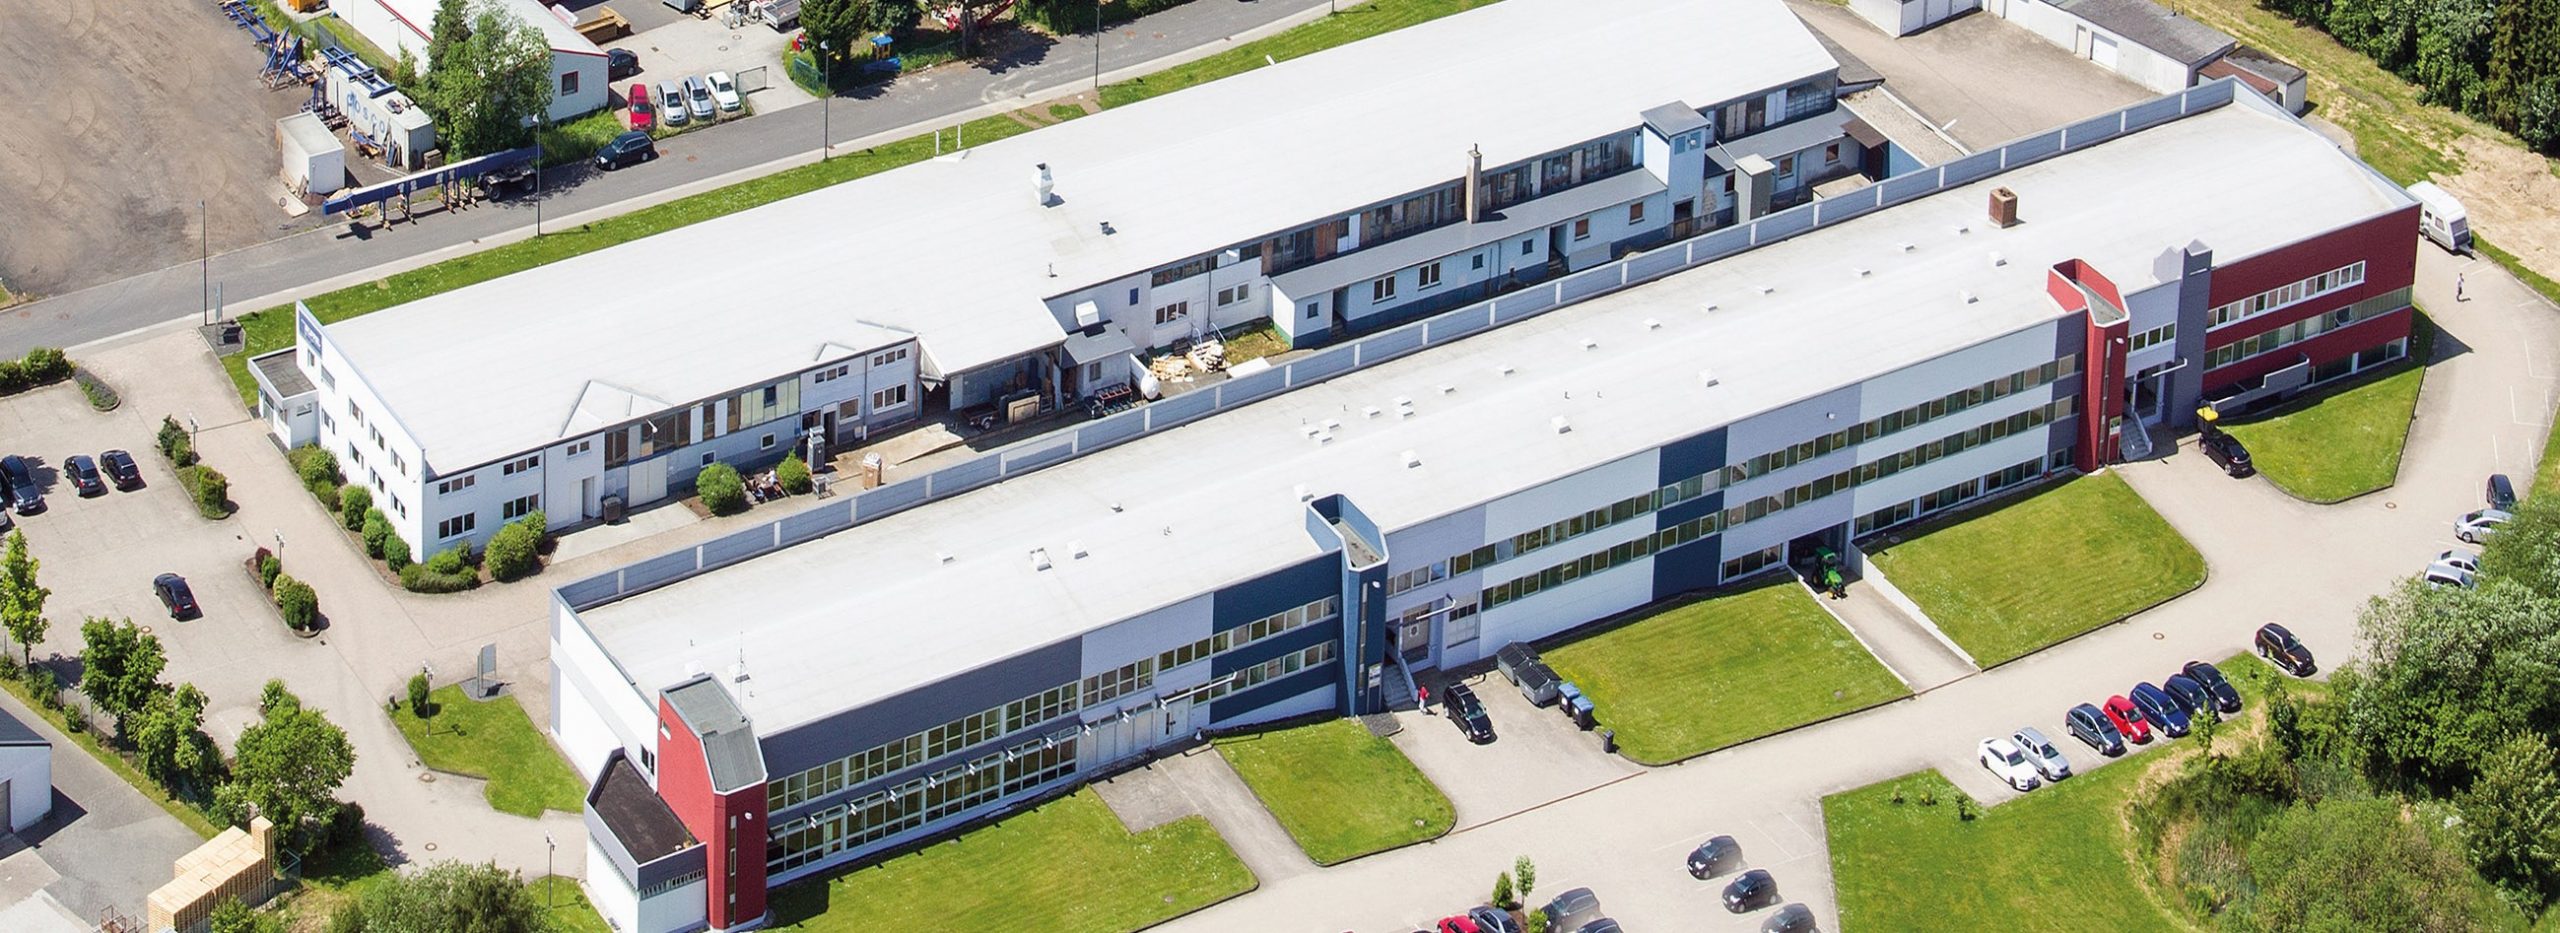 Bürogebäude von oben: Der Hauptsitz der EKONS GmbH in Halsenbach